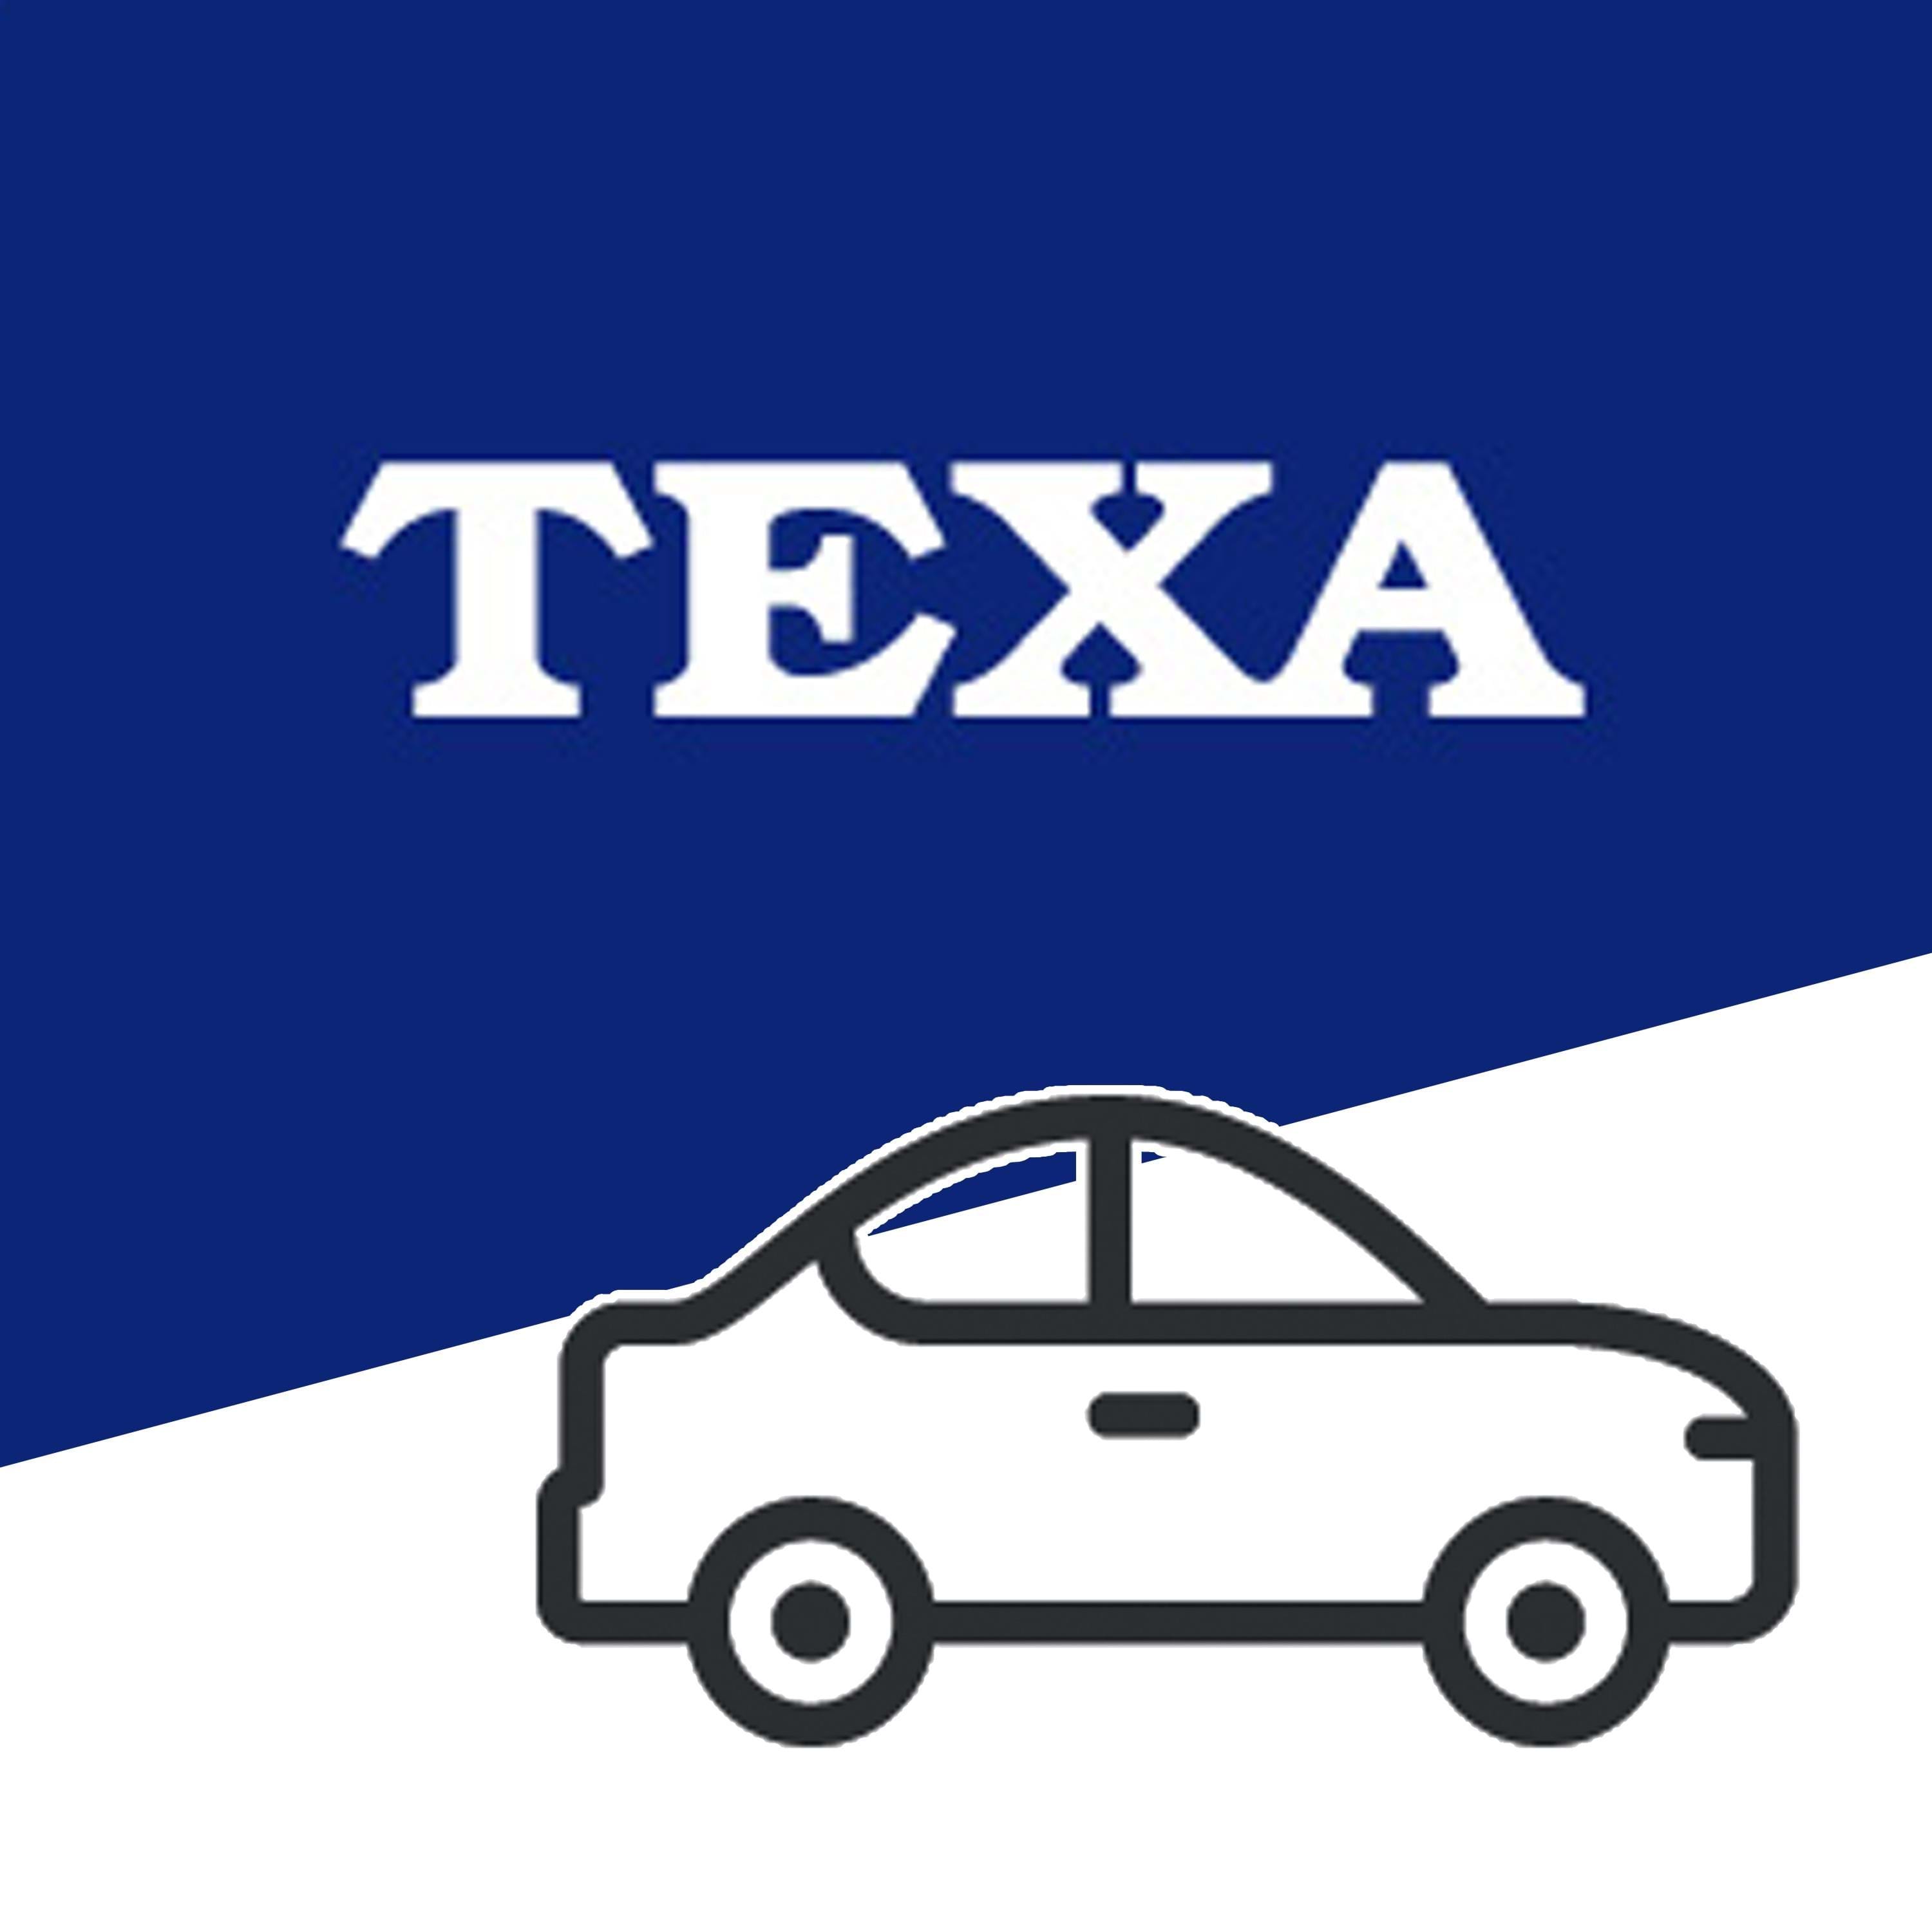 TEXA IDC5 Car Premium